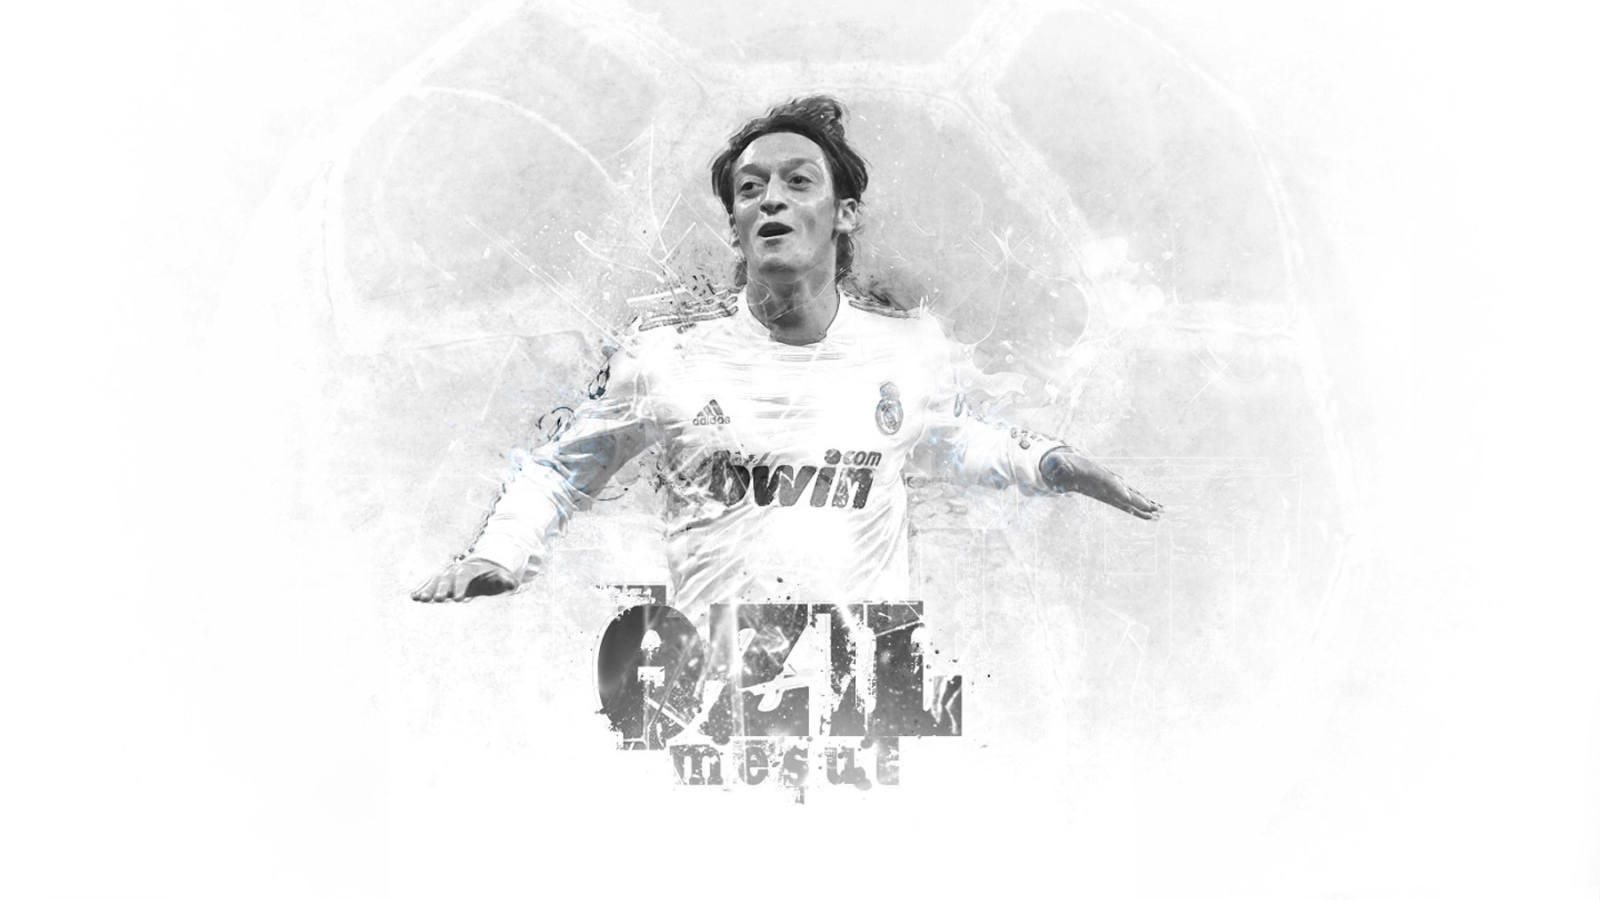 The best midfielder for Arsenal Mesut Ozil